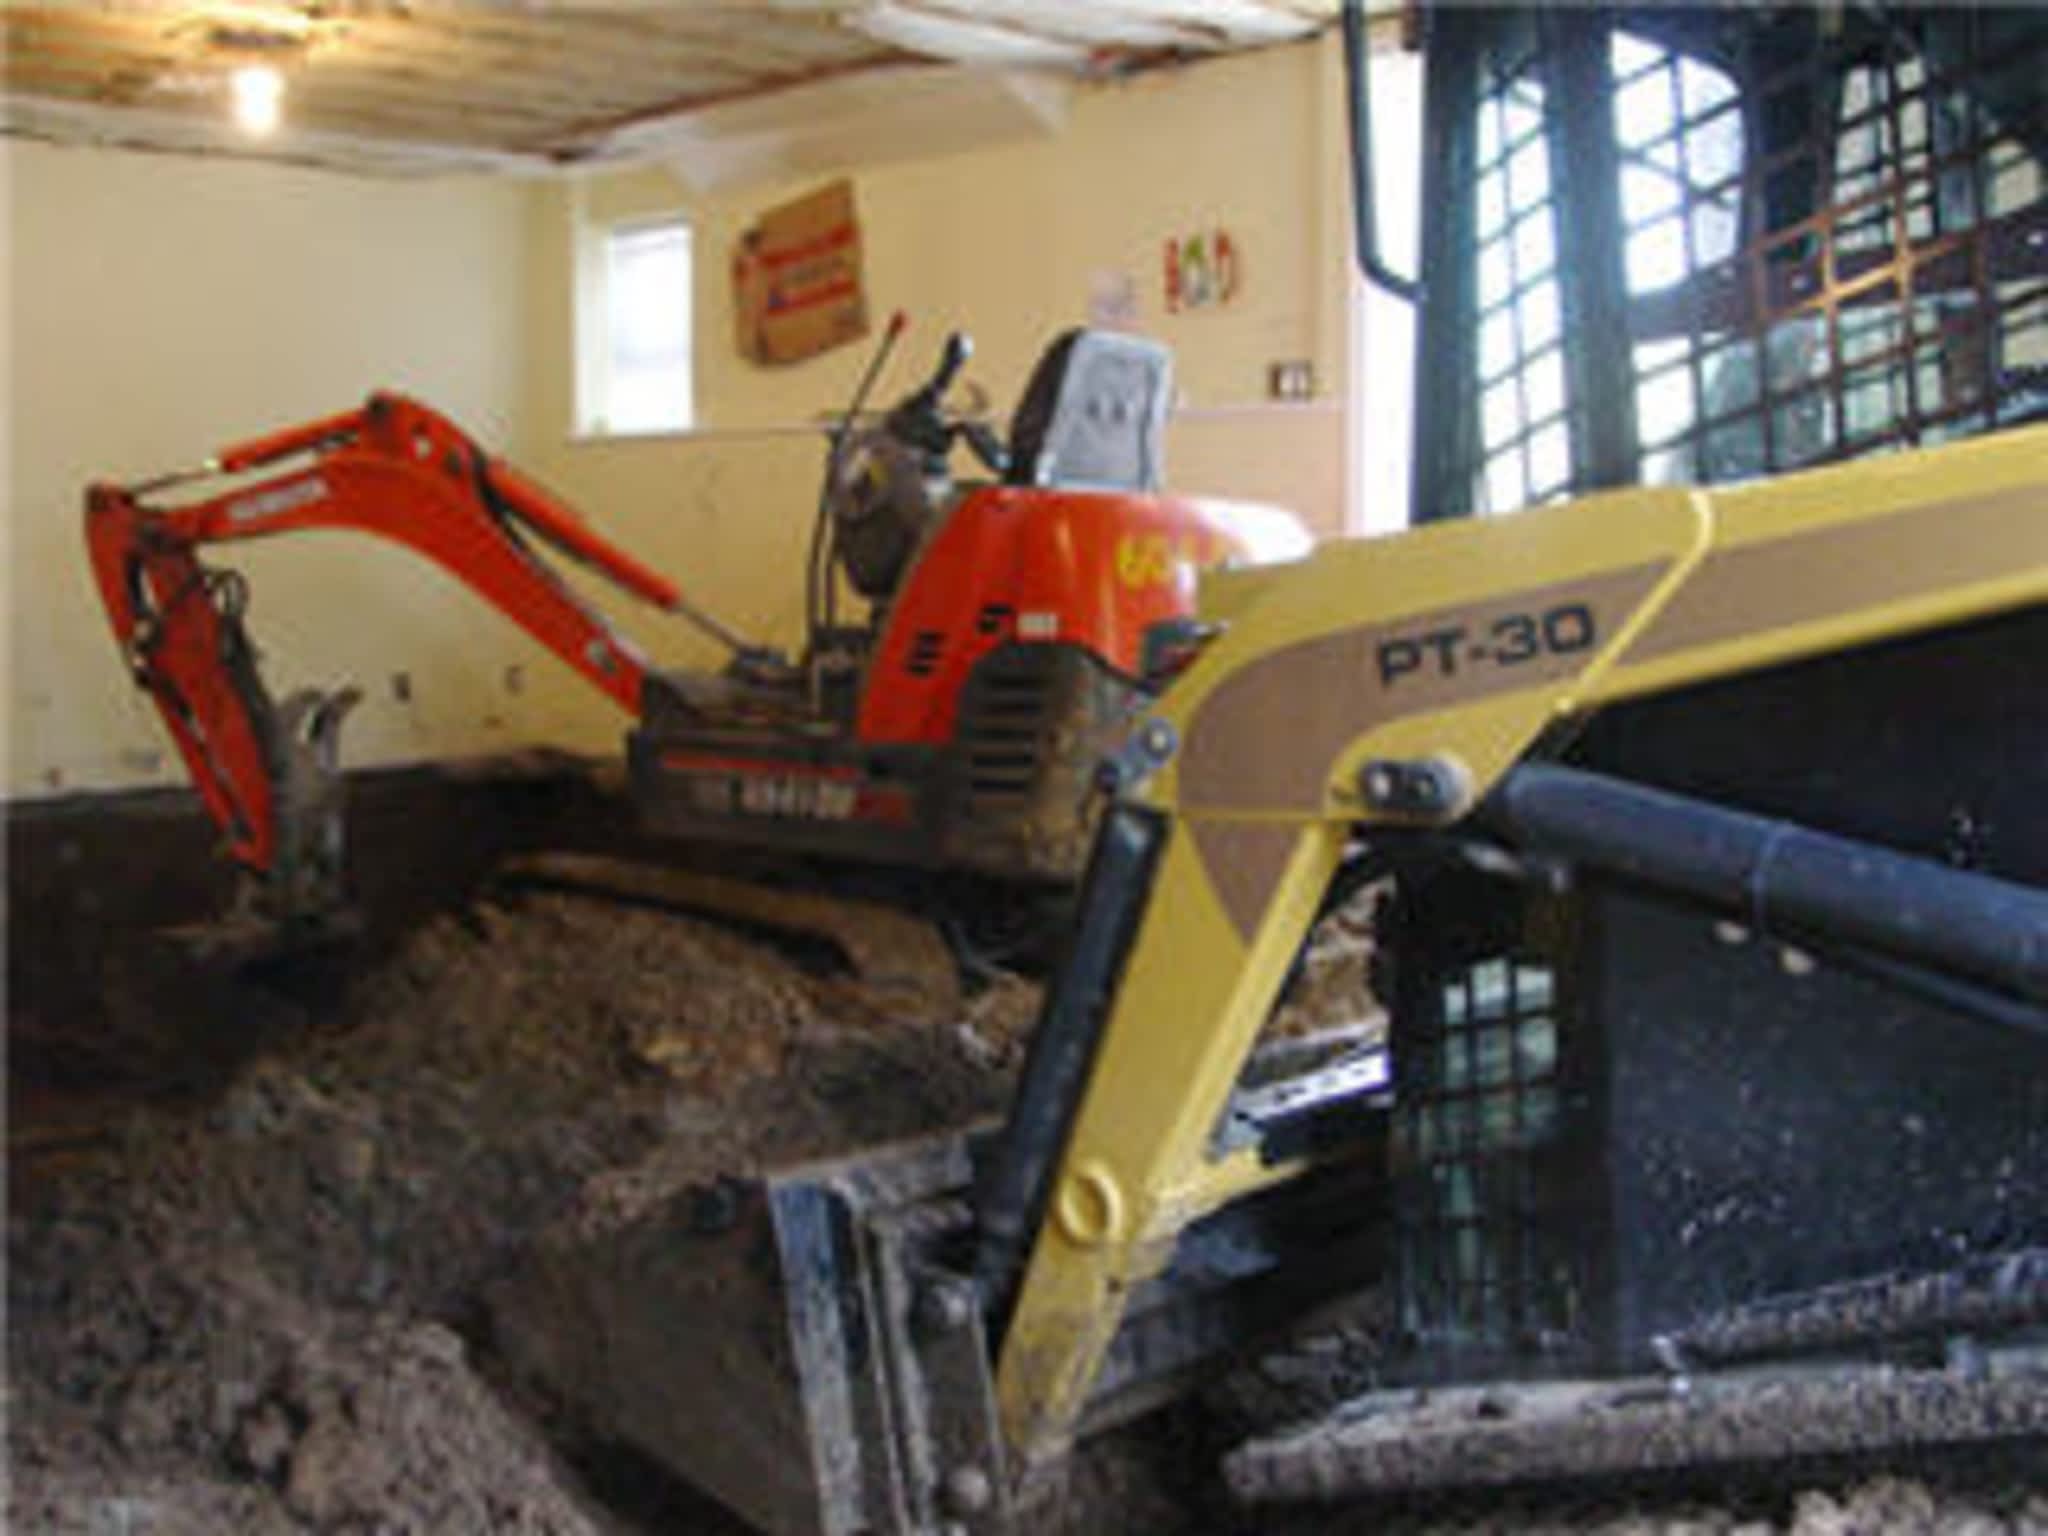 photo IBEX Excavating Ltd